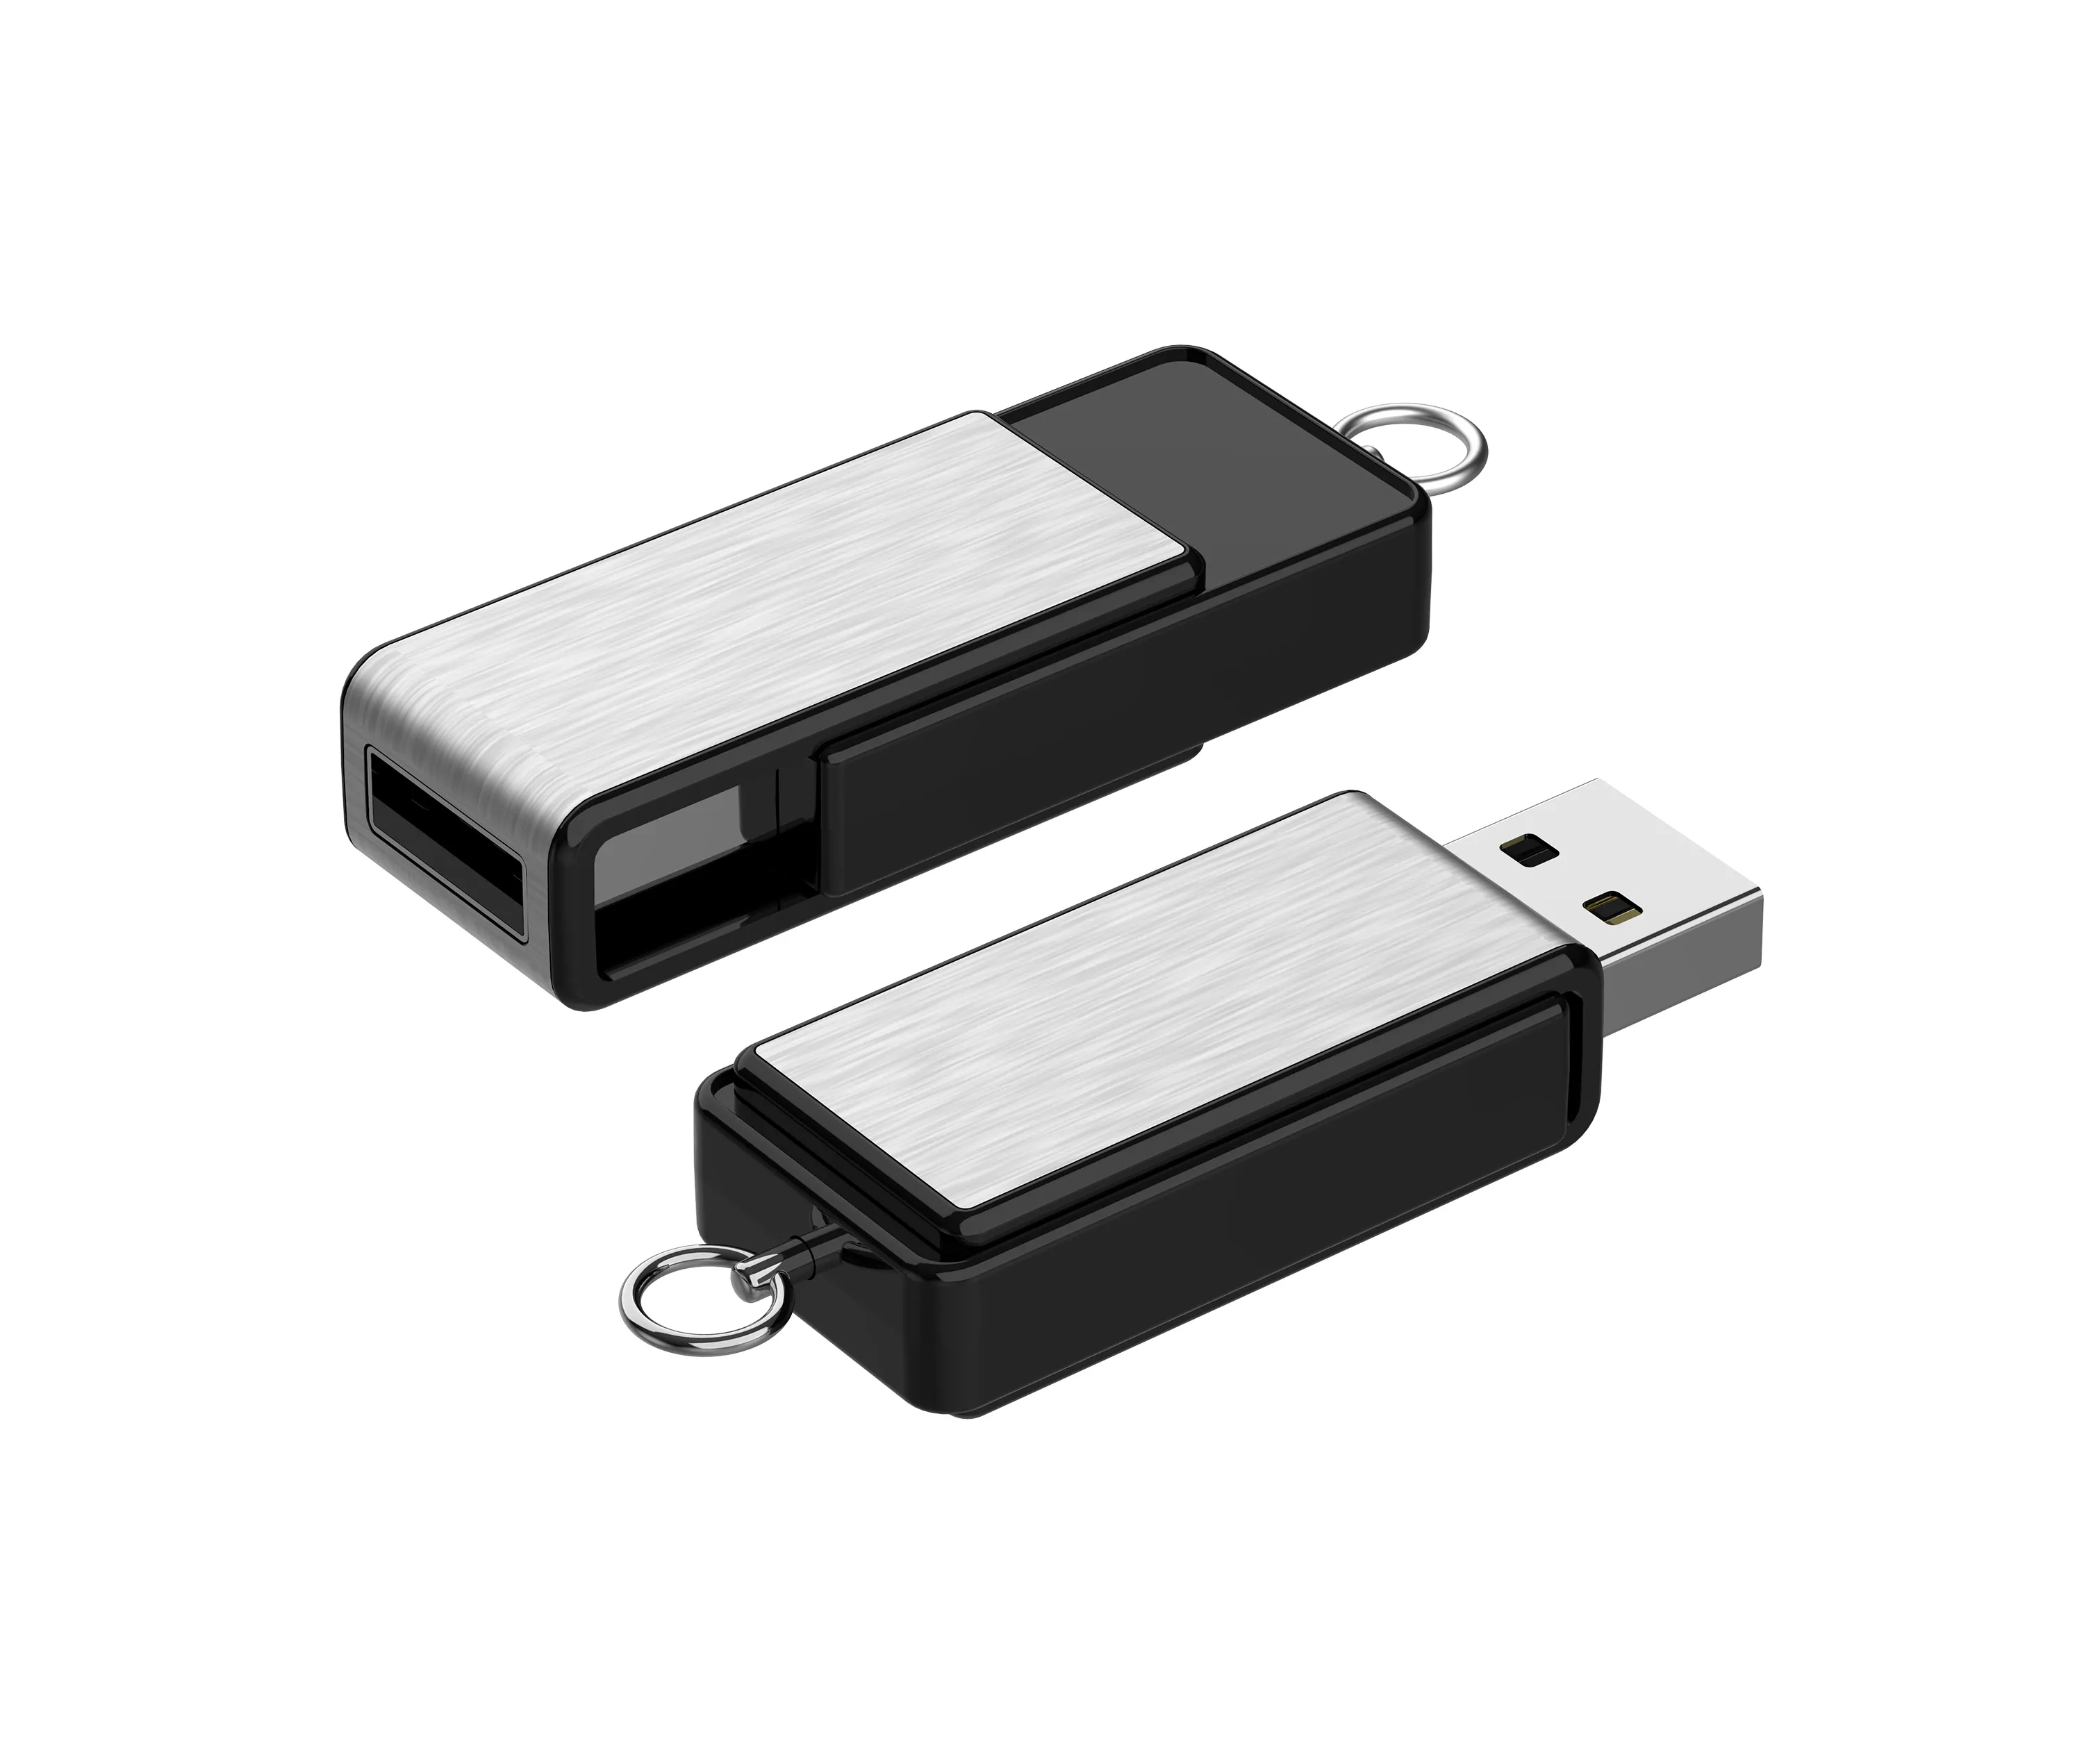 Metal USB flash drive 4GB/6GB/8GB/16GB/32GB USB pendrive cheap USB-stick